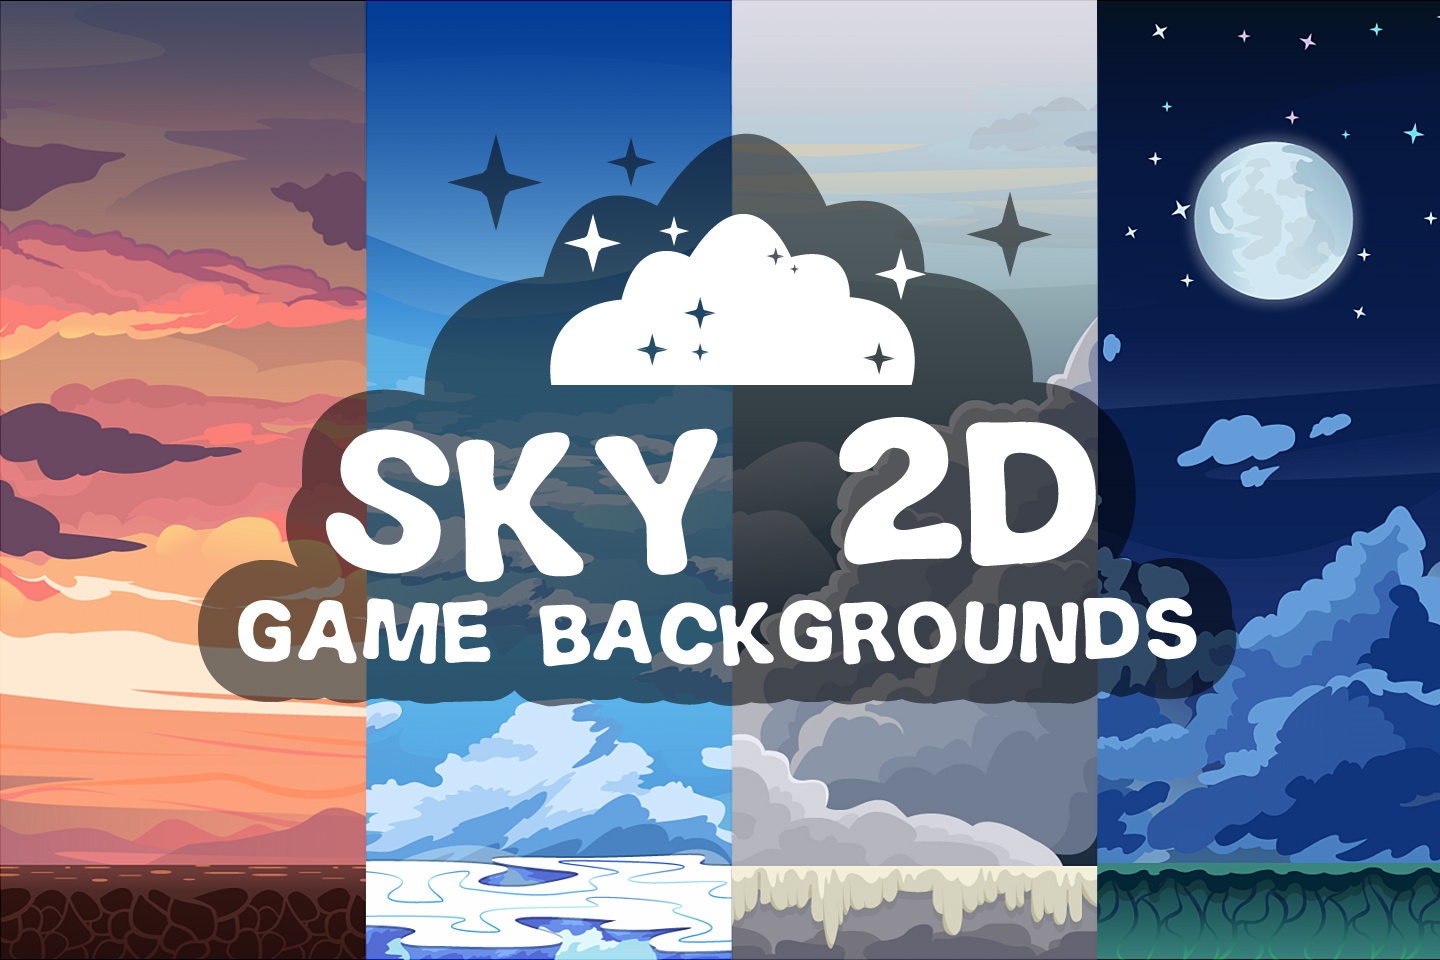 2D Game Backgrounds: Điểm nhấn của một game không thể thiếu là các hình nền 2D siêu đẹp. Với những hình ảnh sinh động, khung cảnh sống động và màu sắc bắt mắt, bạn sẽ được trải nghiệm những phút giây hồi hộp và thú vị của trò chơi.